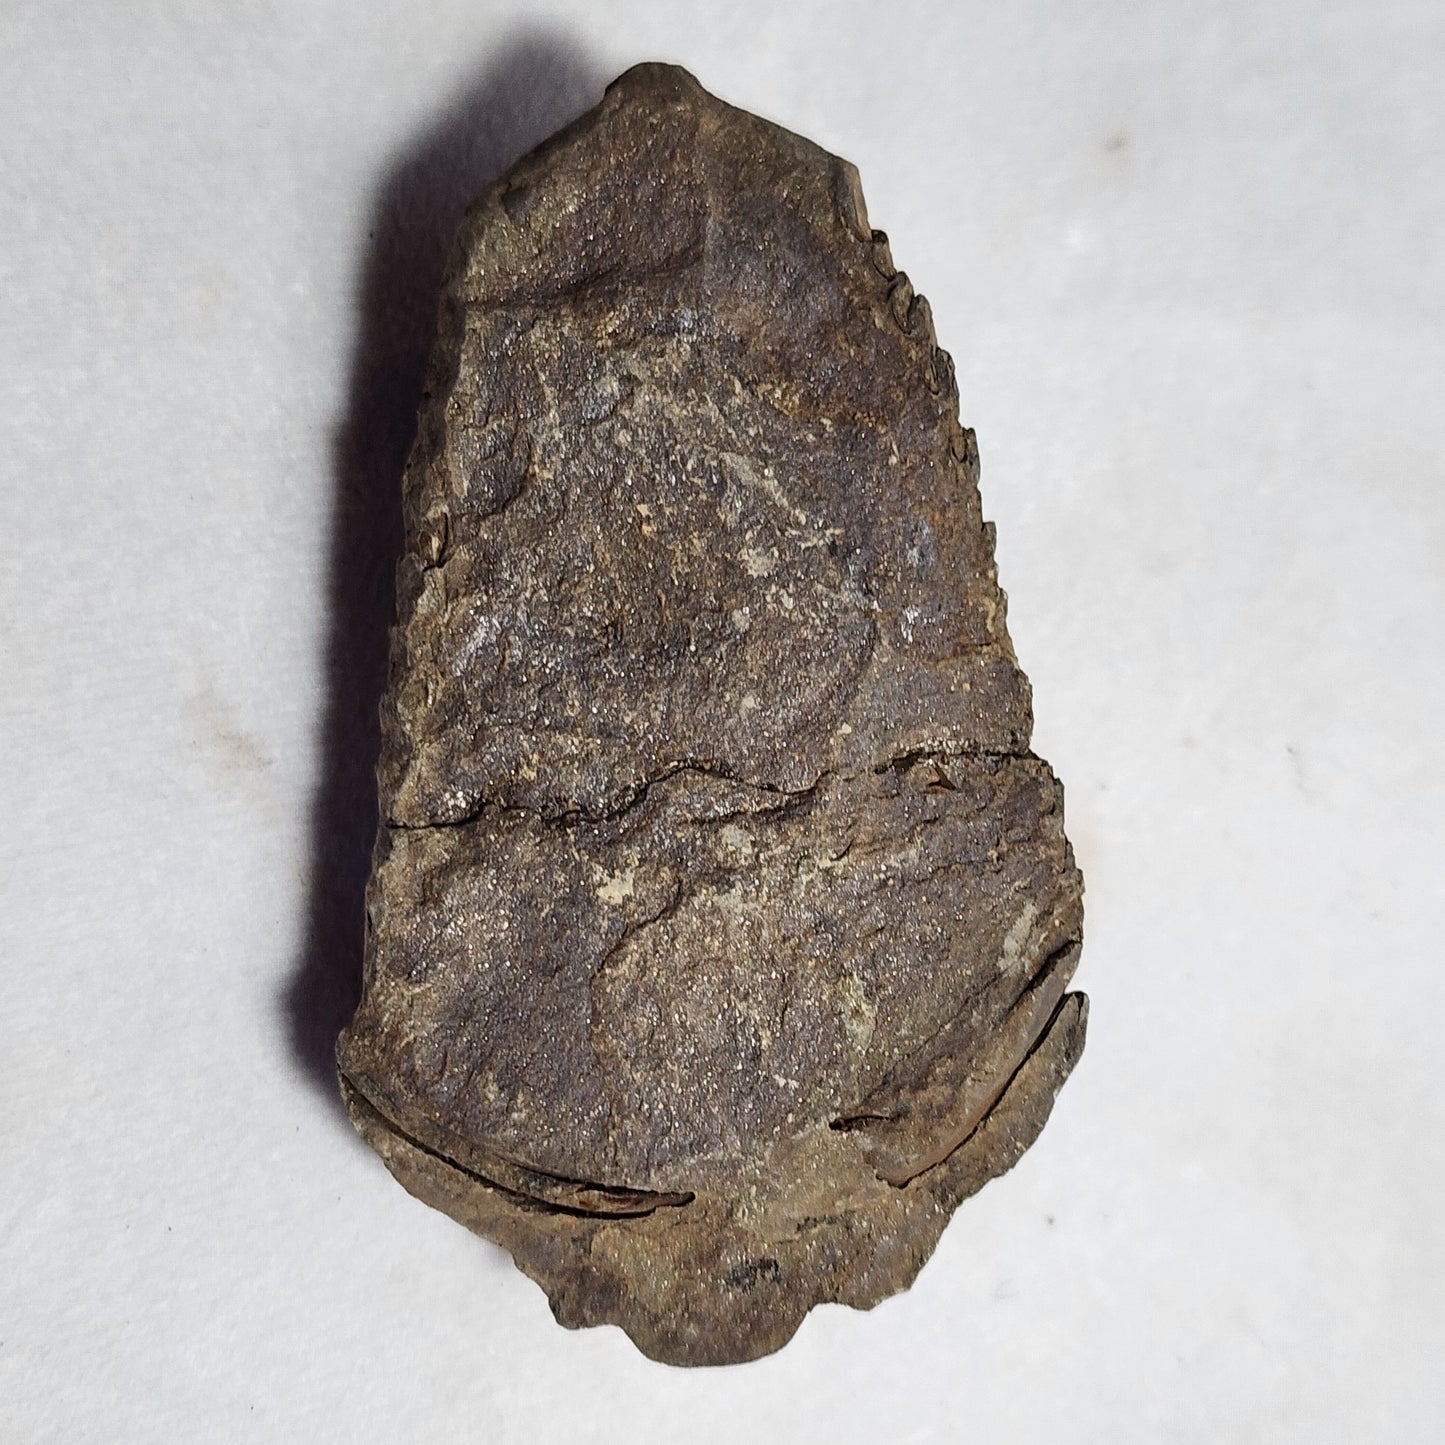 3.25" Flexicalymene Trilobite